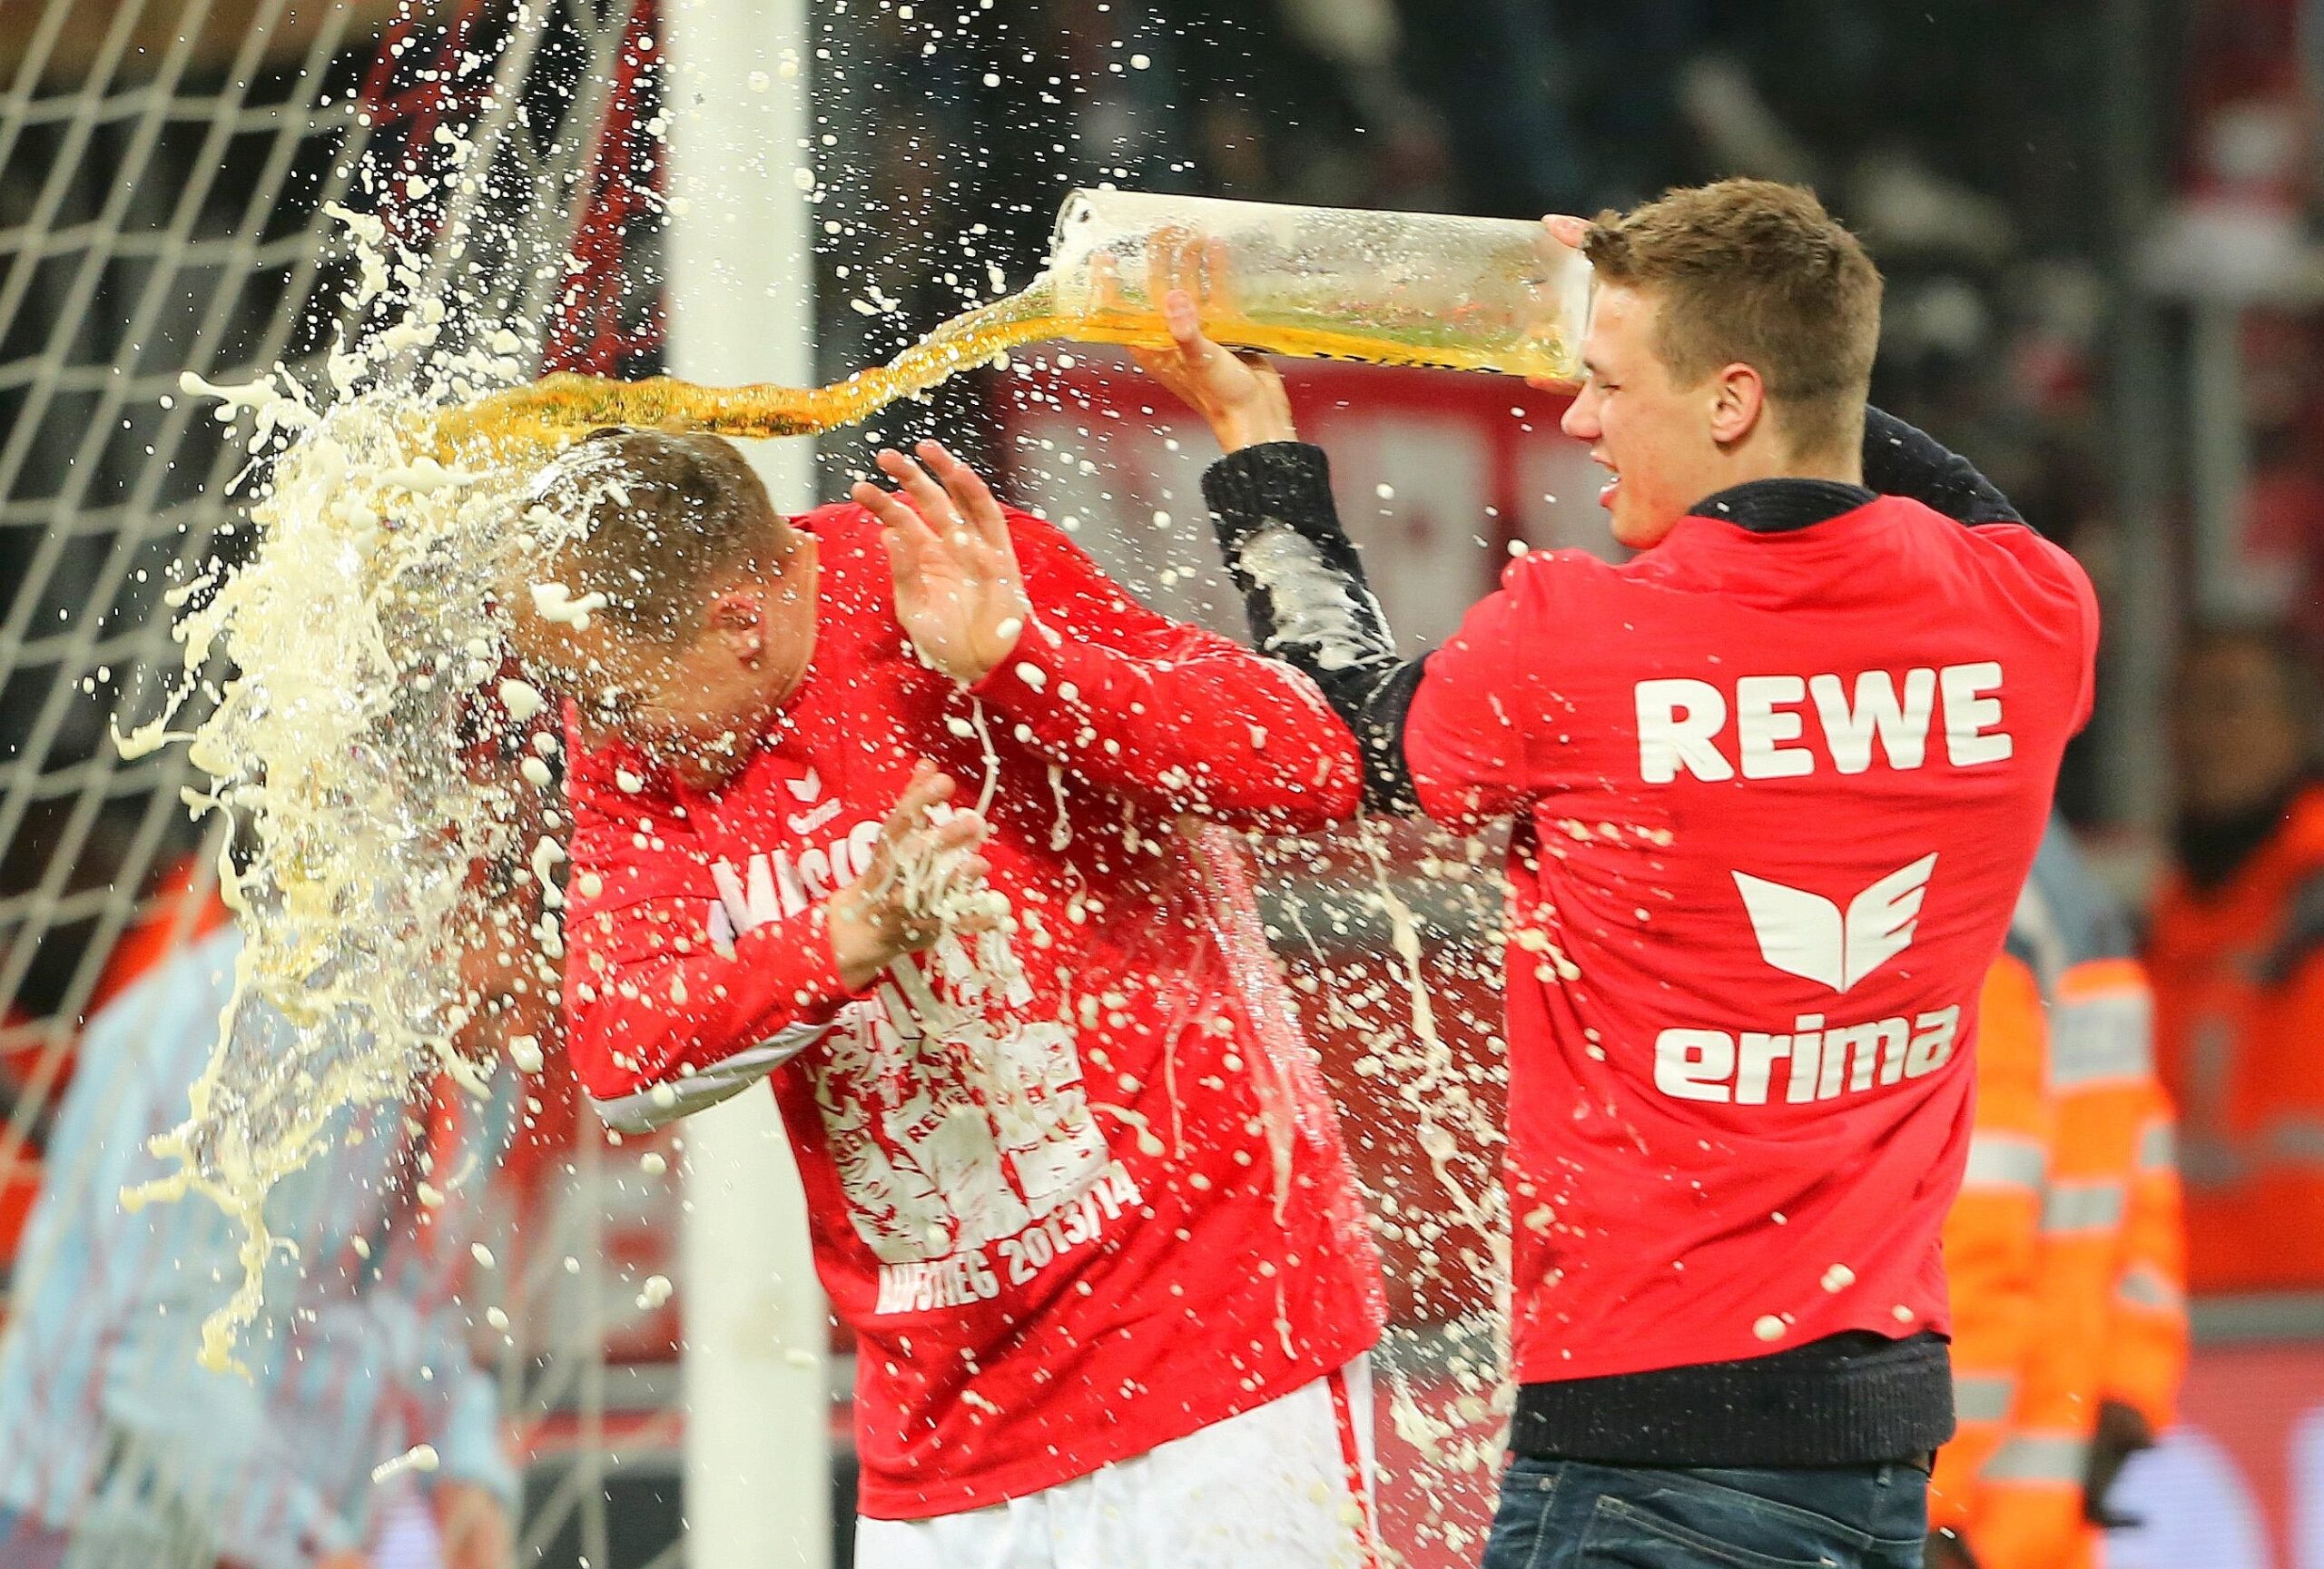 Köln im Siegestaumel: Kevin McKenna feiert nach dem 3:1 gegen Bochum den Aufstieg in die 1. Bundesliga. Komisch, dass sie den Abstieg in der Saison danach nicht so gefeiert haben. (21.04.2014)